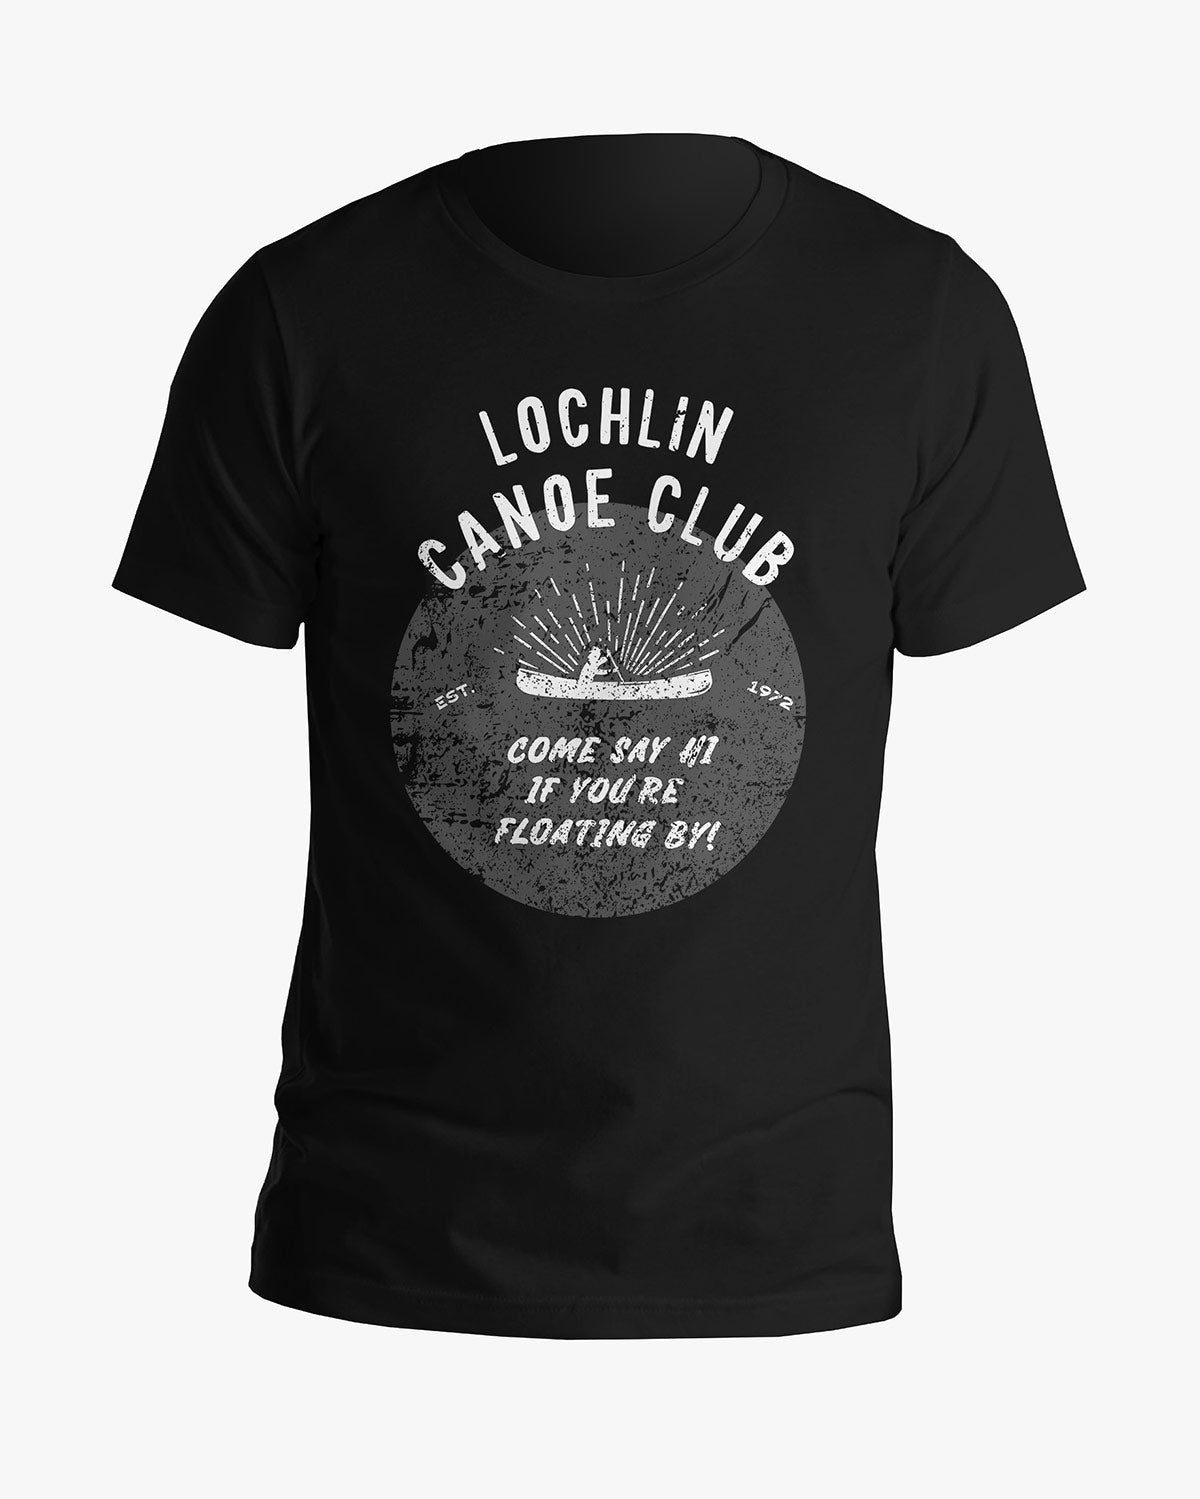 Canoe Club - Lochlin - Tee